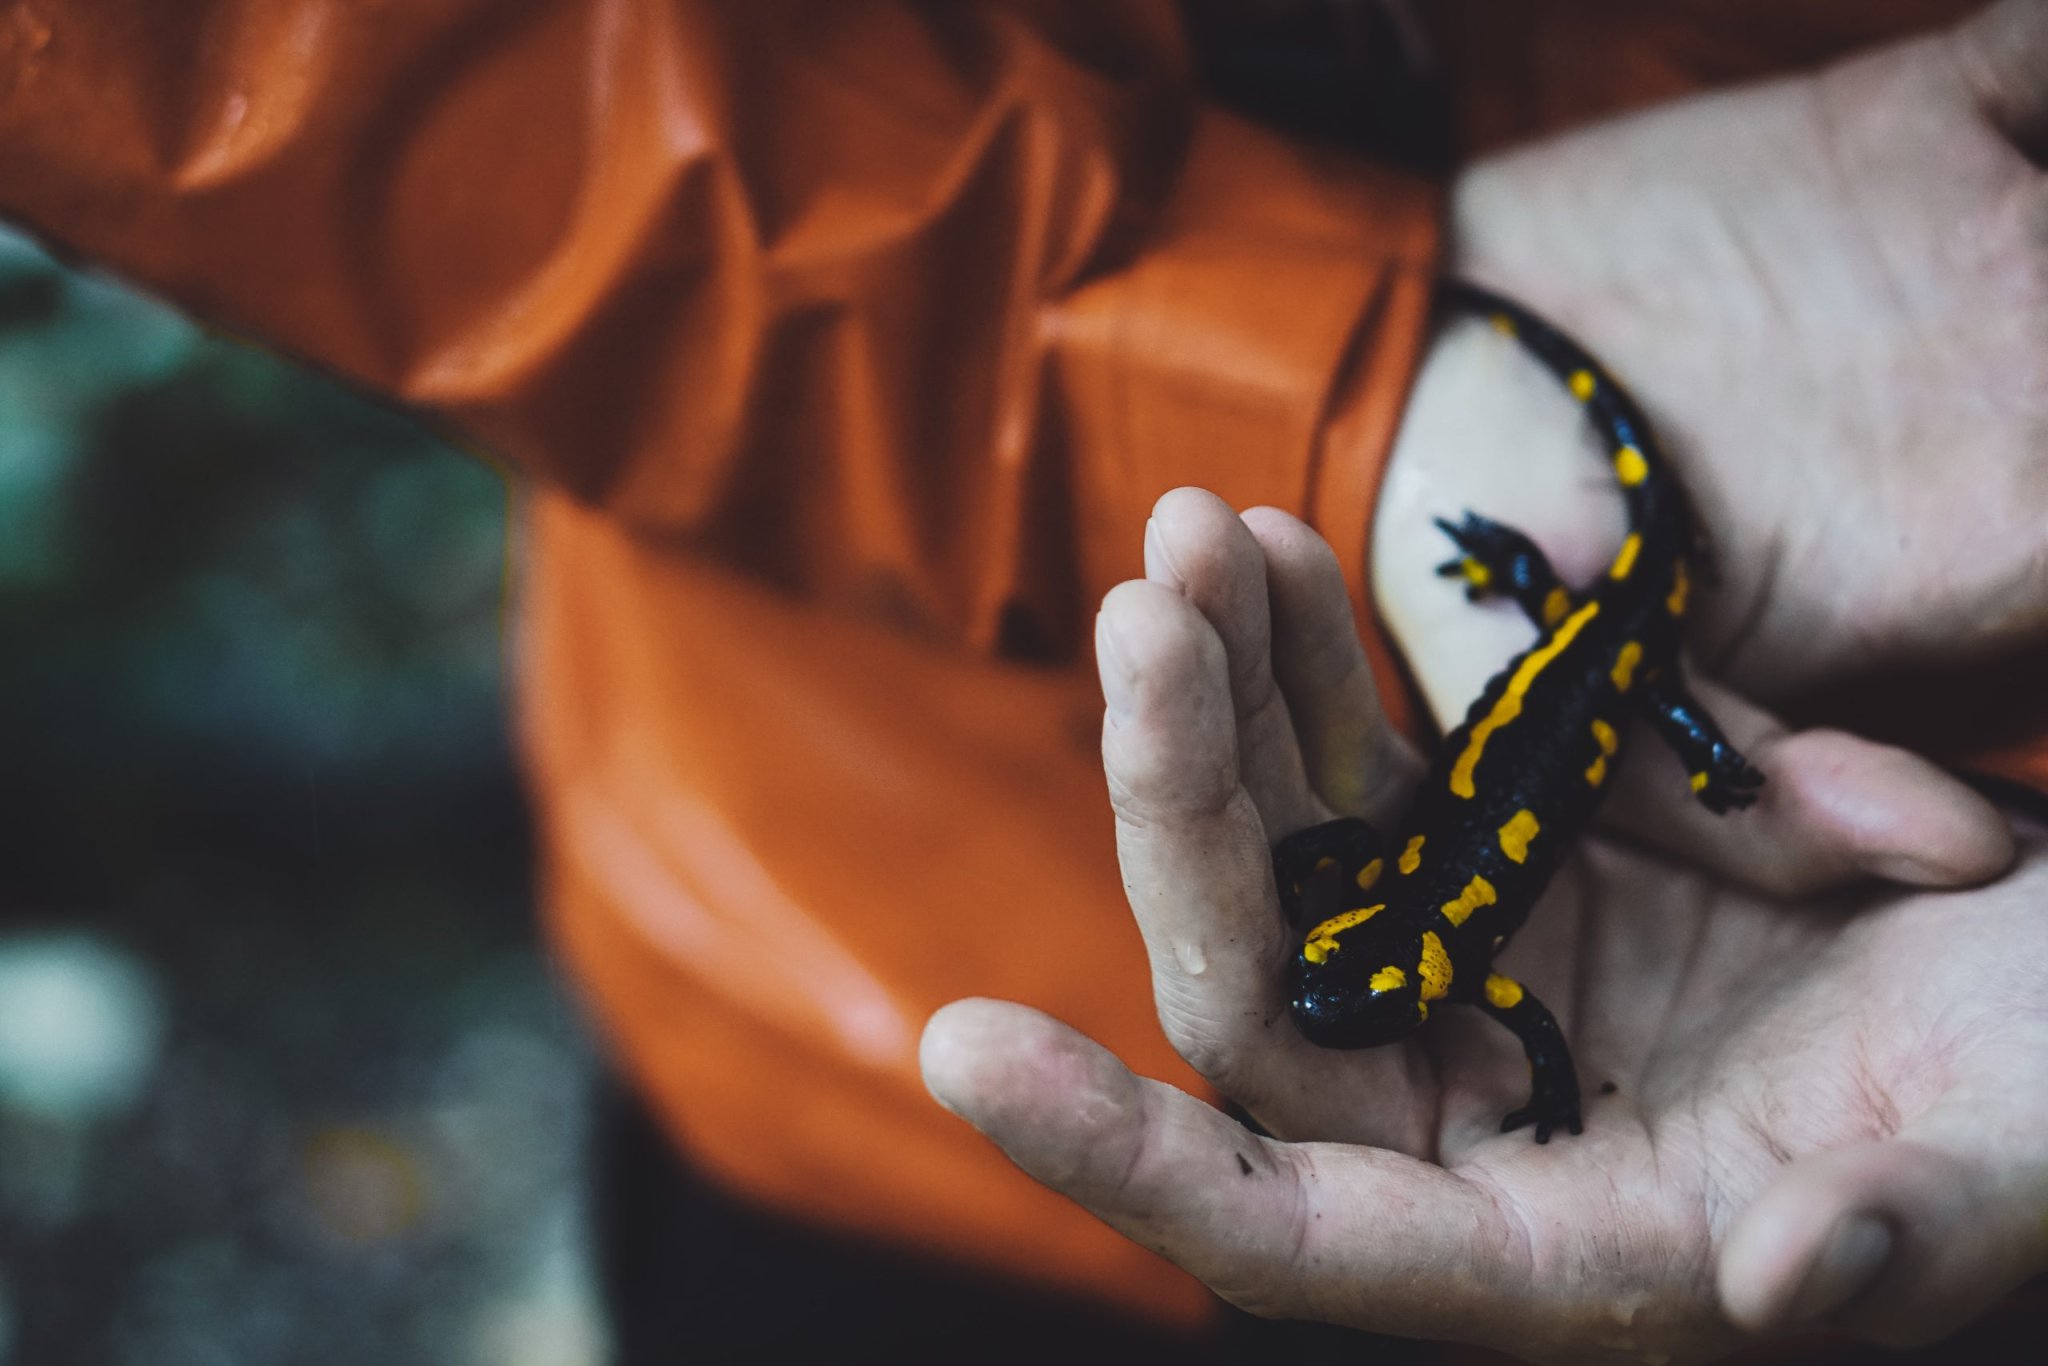 Salamandras paracaidistas: este vídeo demuestra que son perfectamente capaces